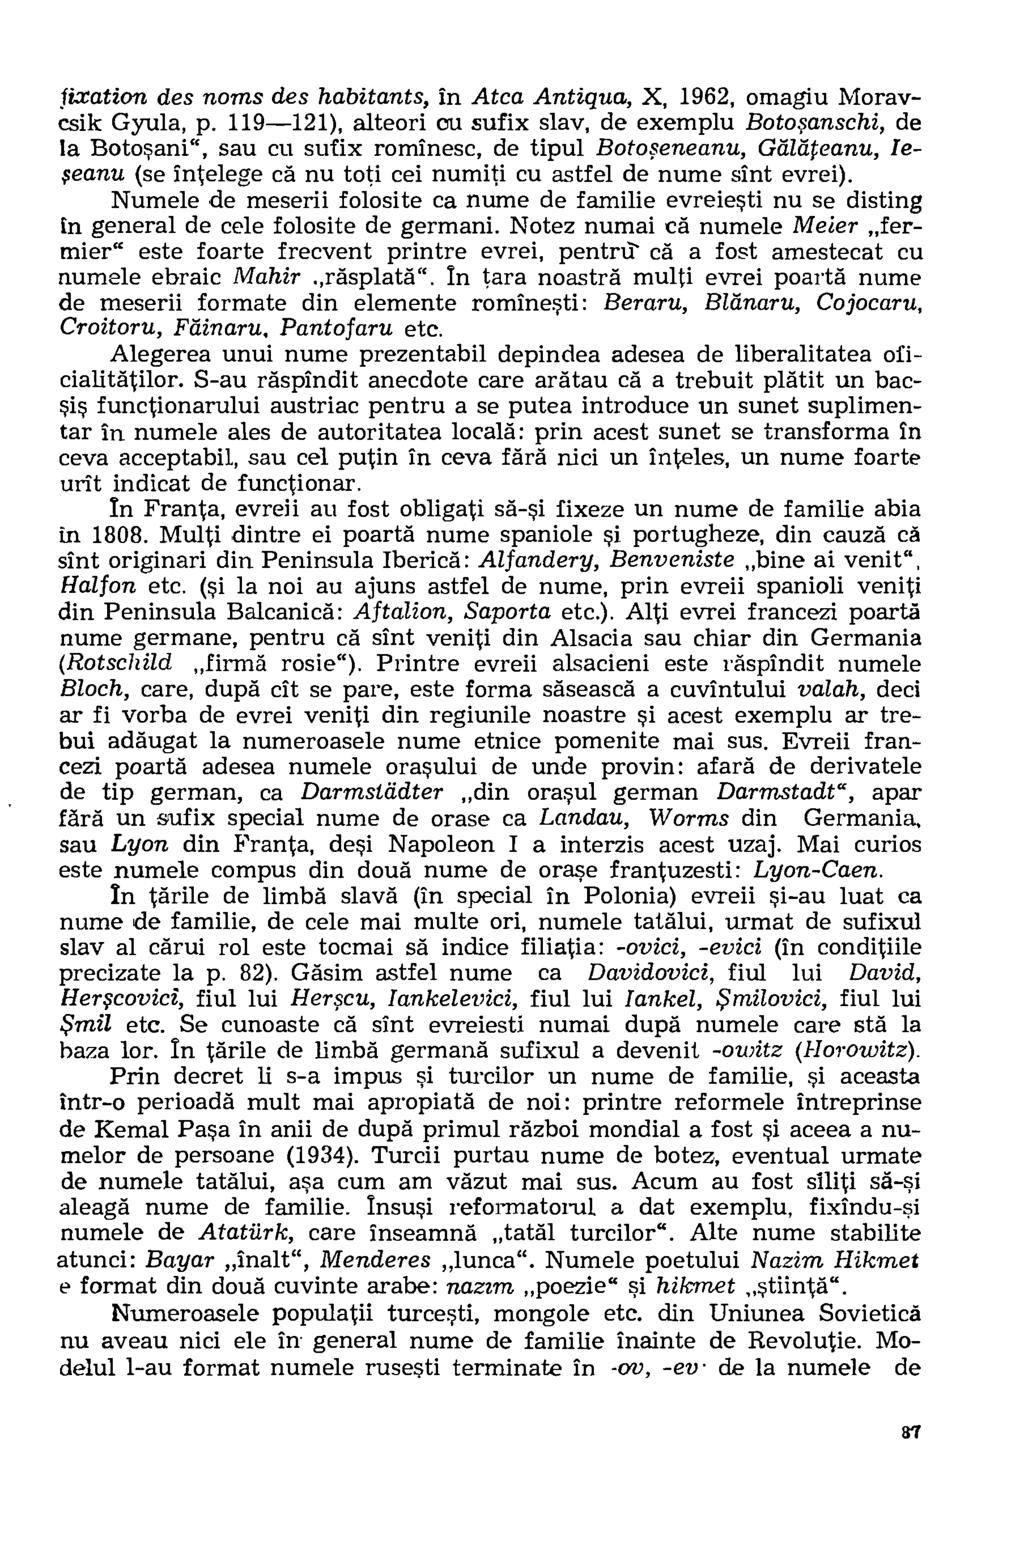 fixation des noms des habitants, in Atca Antigua, X, 1962, omagiu Moraycsik Gyula, p.